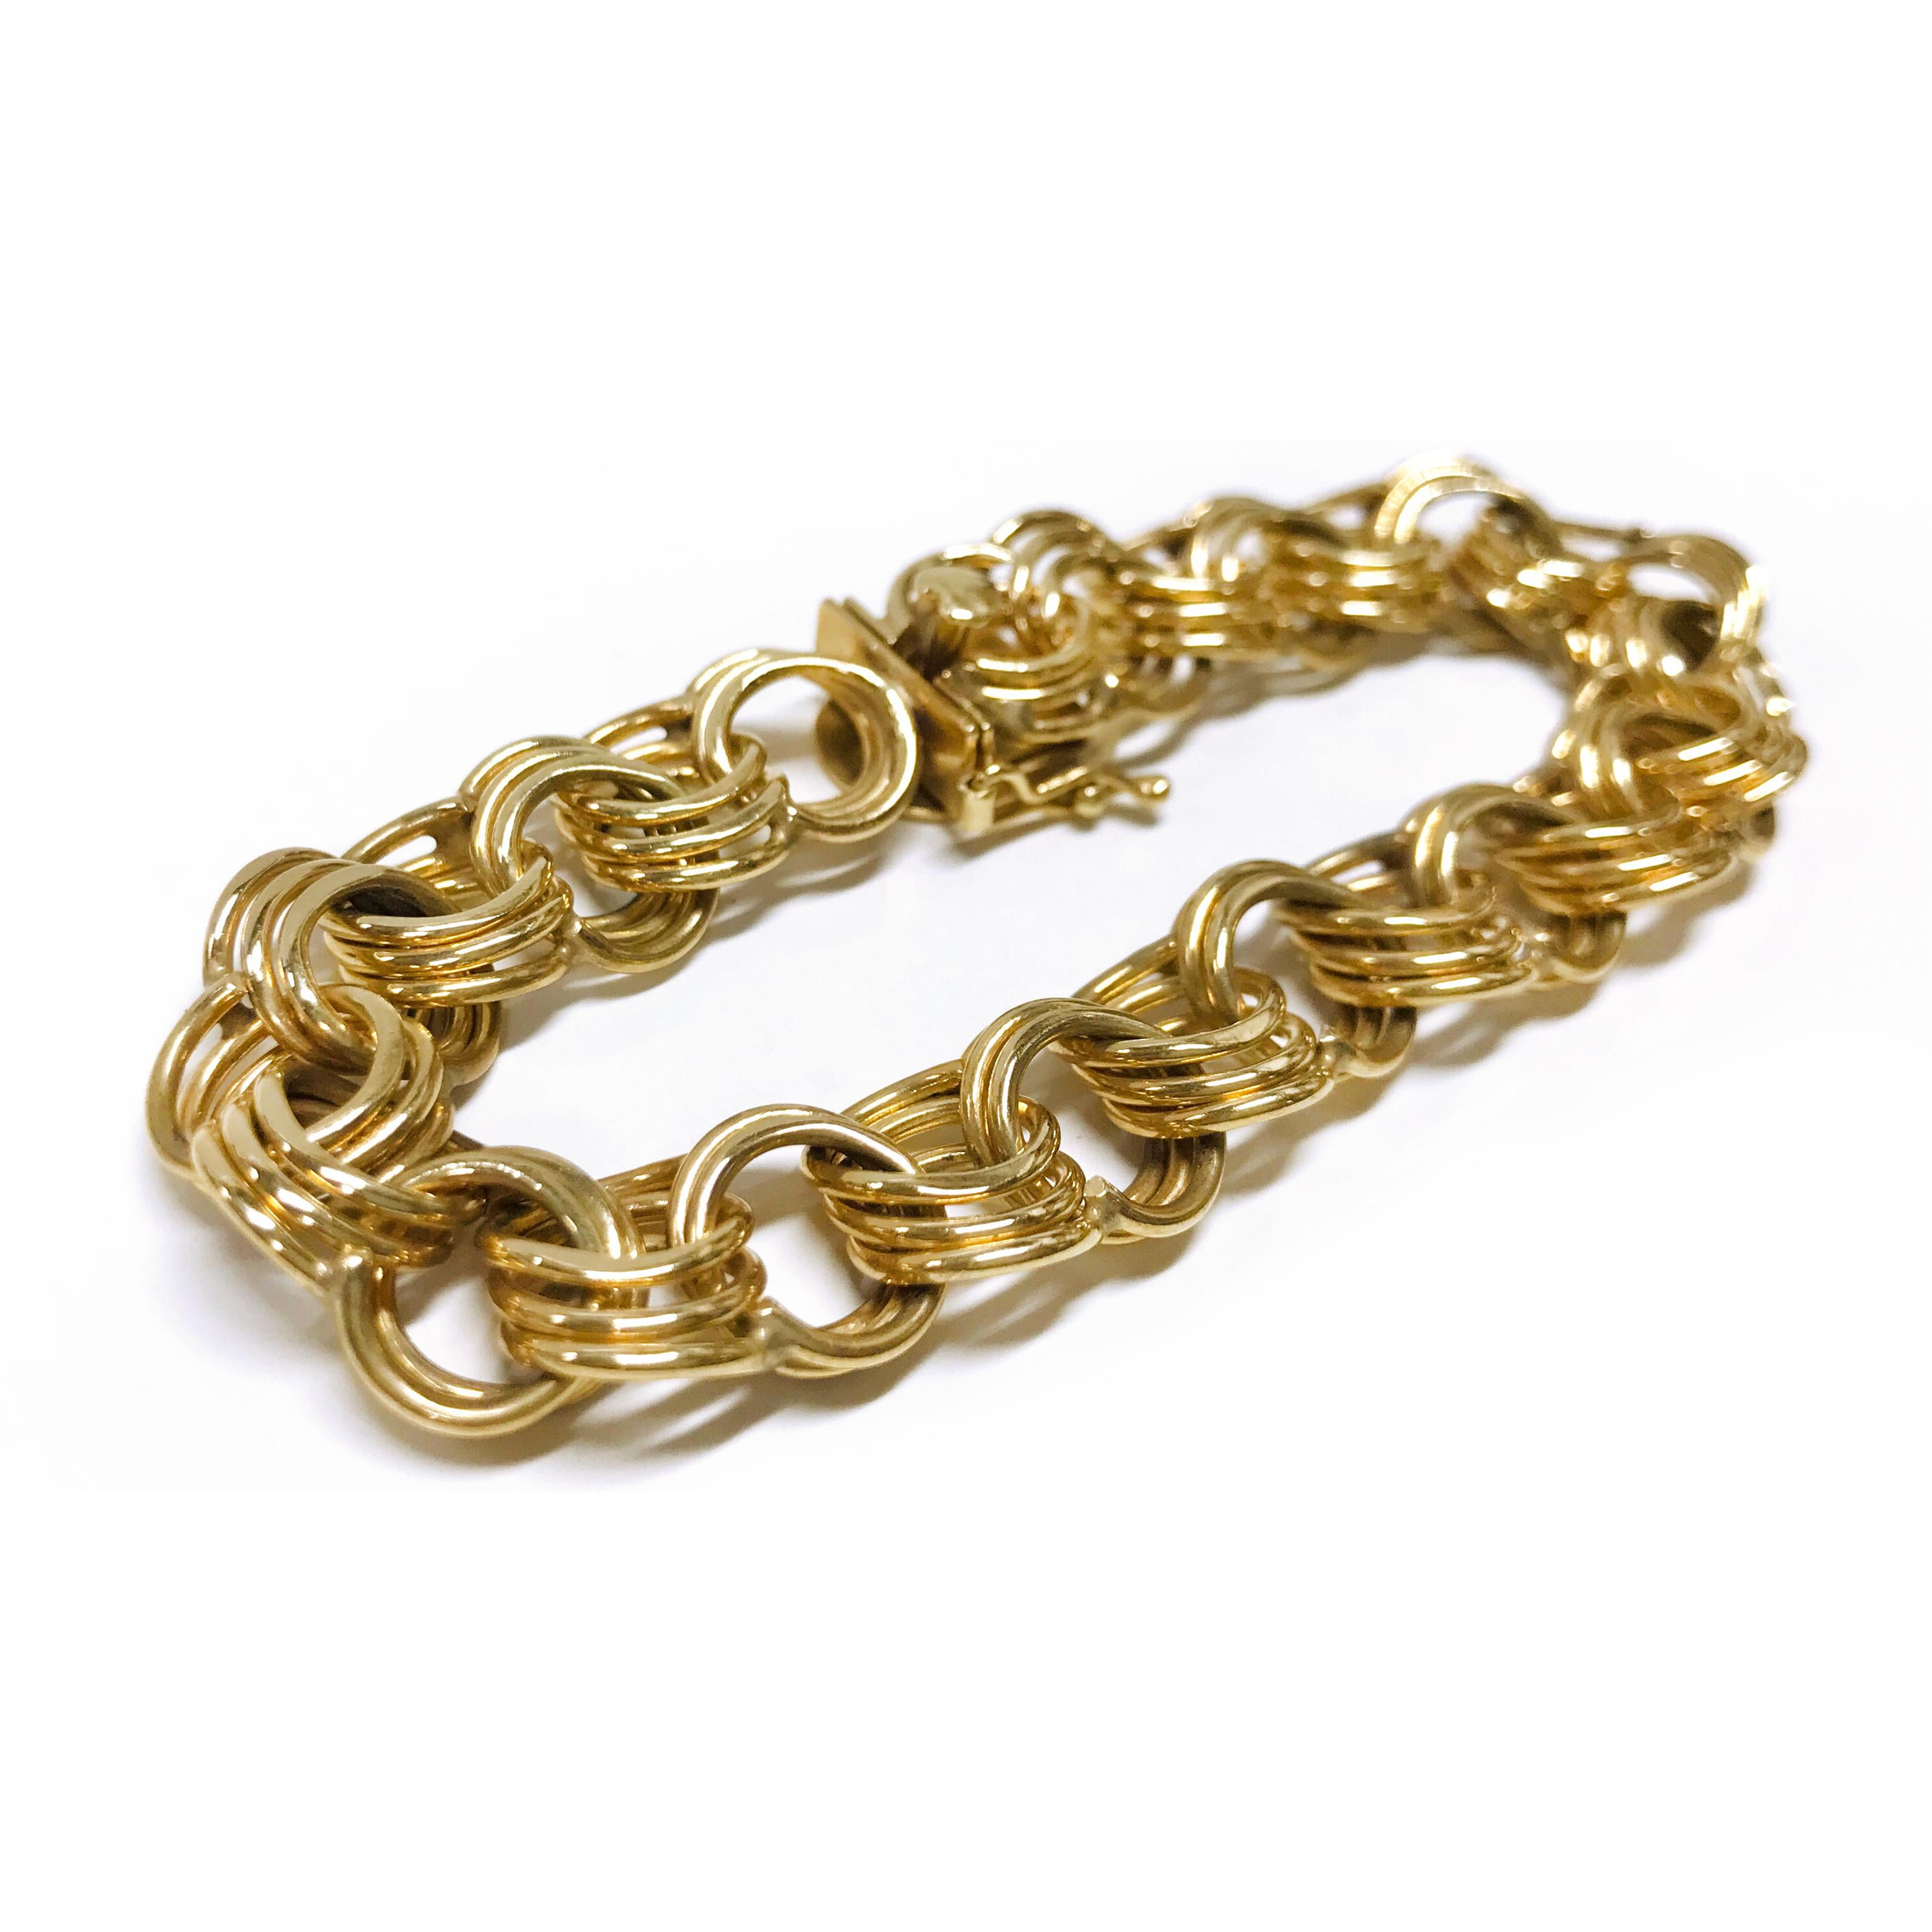 14 Karat Wide Triple Link Charm Bracelet. The bracelet features yellow gold triple links. The bracelet is 0.48